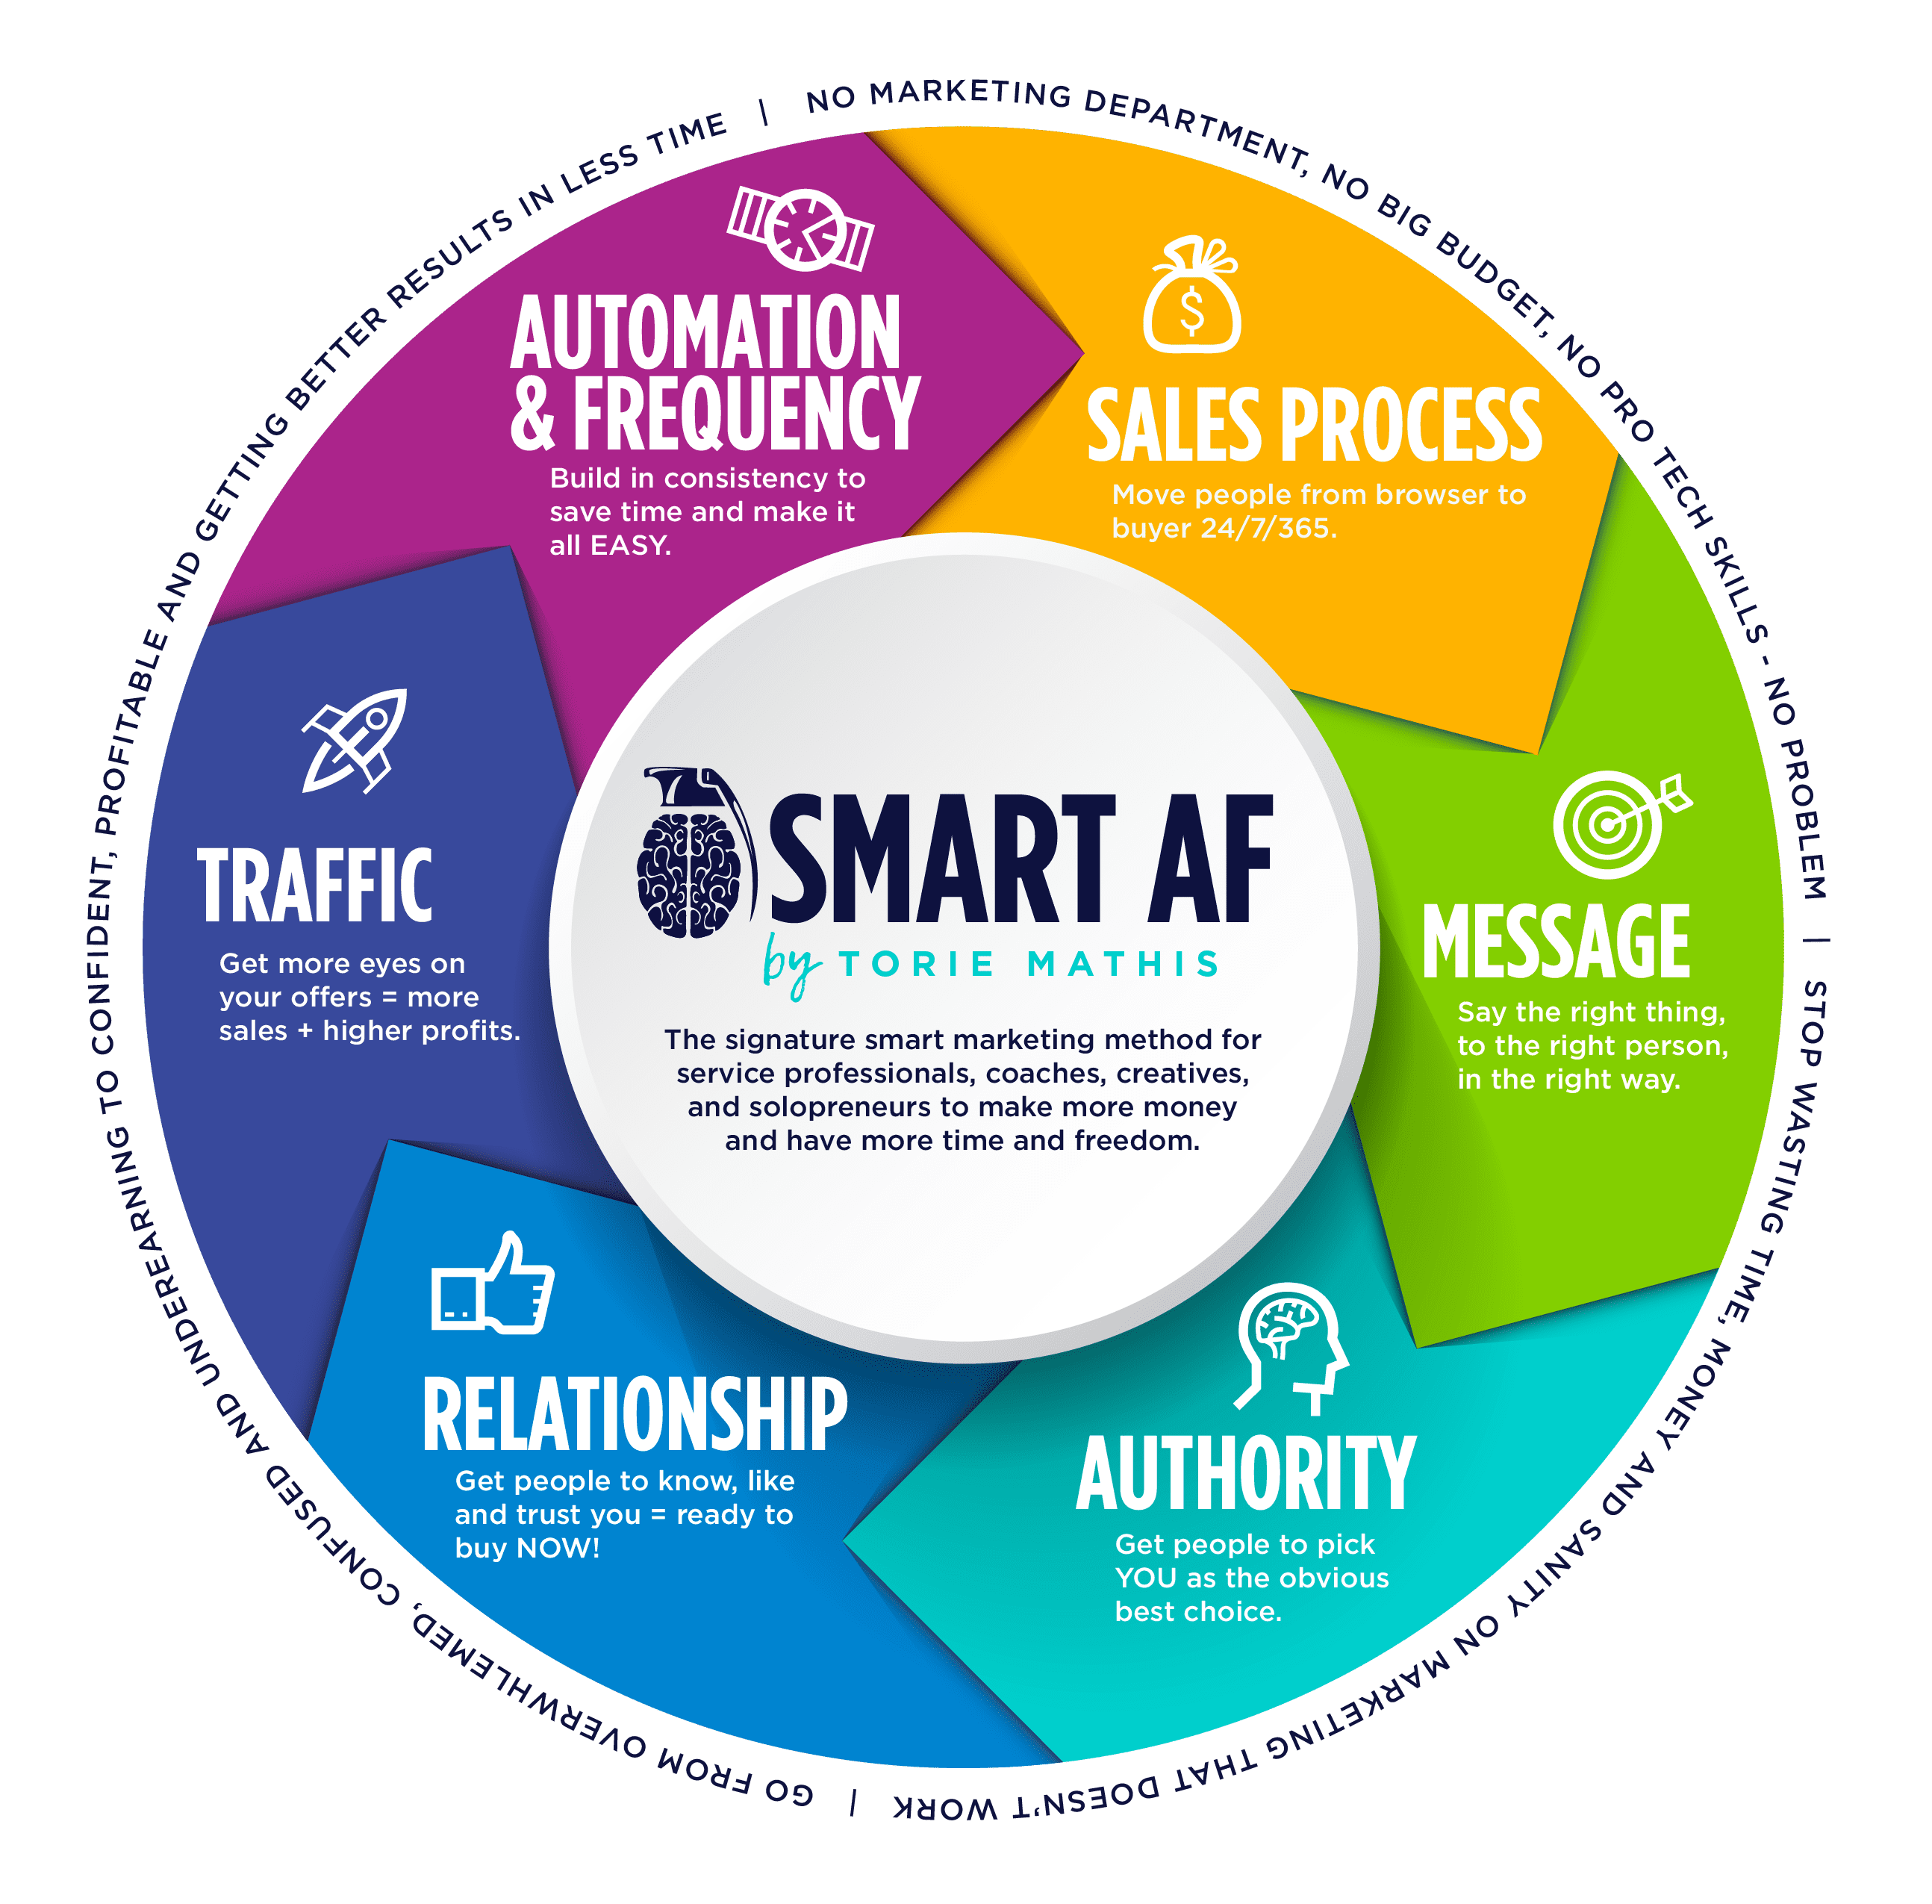 Smart AF Method by Torie Mathis